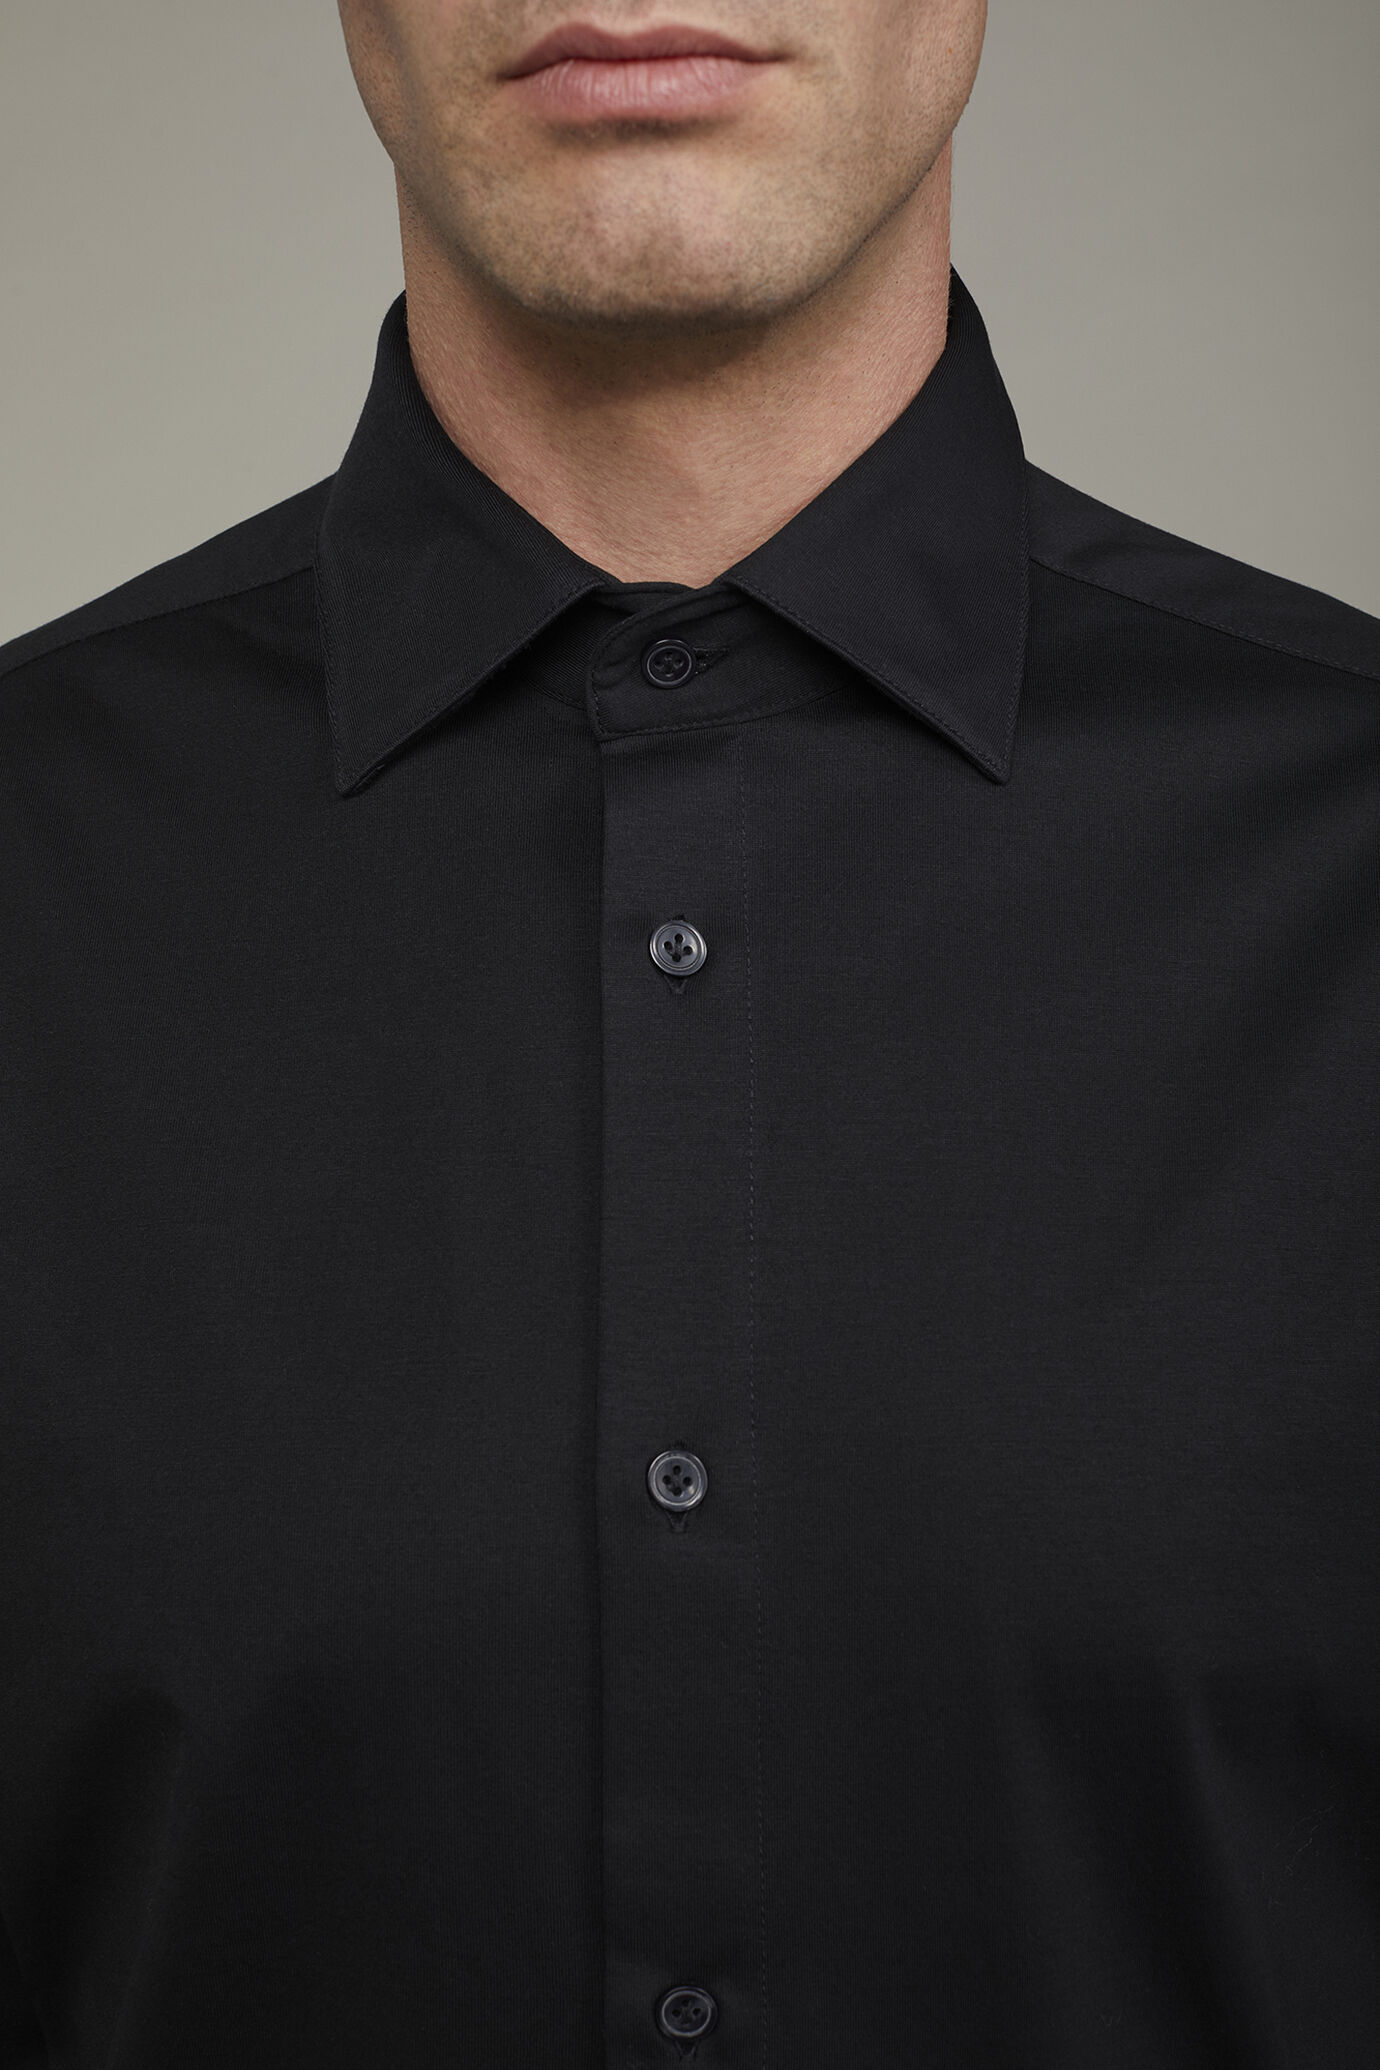 Polo camicia uomo a manica lunga con collo classico 100% cotone piquet regular fit image number 3